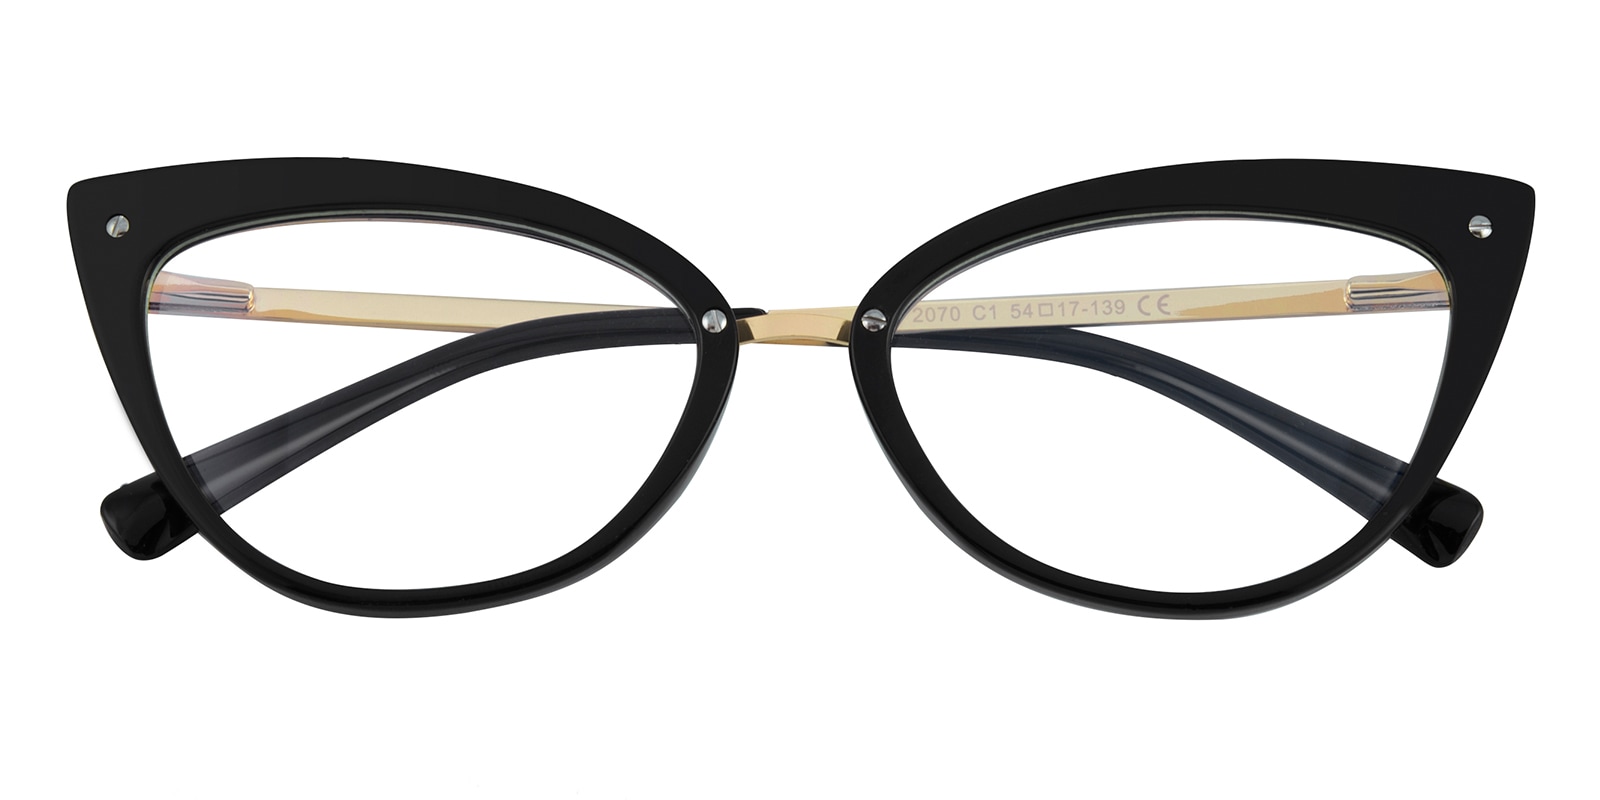 Cat Eye Eyeglasses, Full Frame Black/Golden TR90,Metal - FP2551